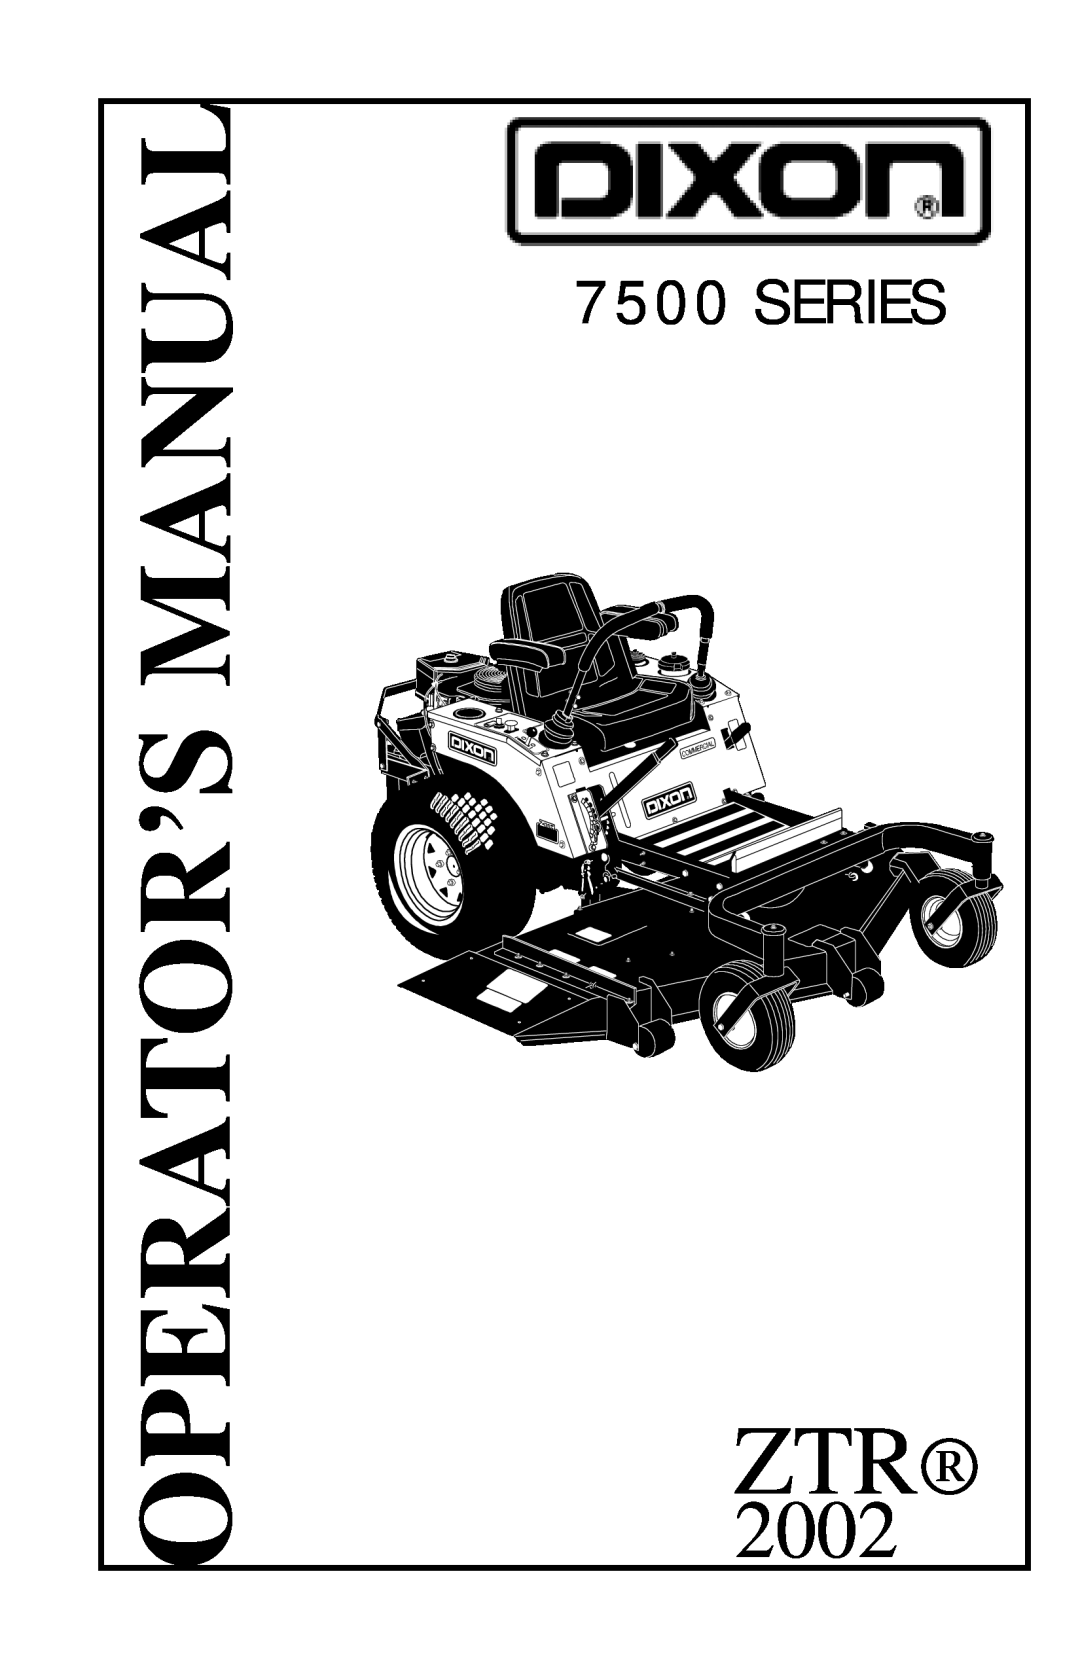 Dixon 7500 Series manual Manual, Operator’S, 2002 